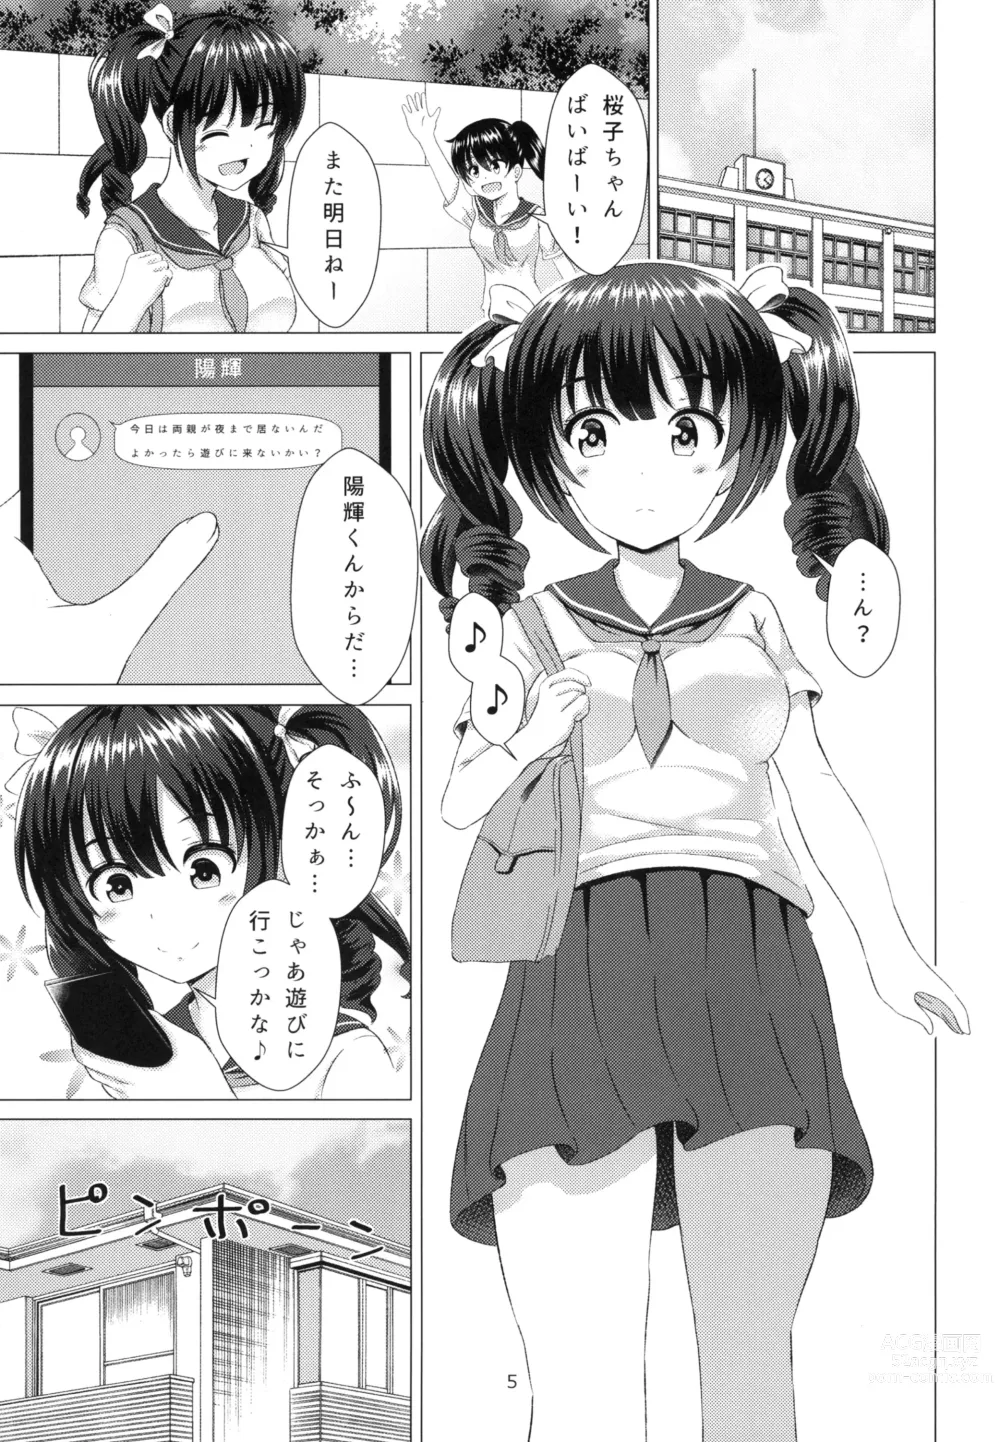 Page 5 of doujinshi Yuganda Koigokoro